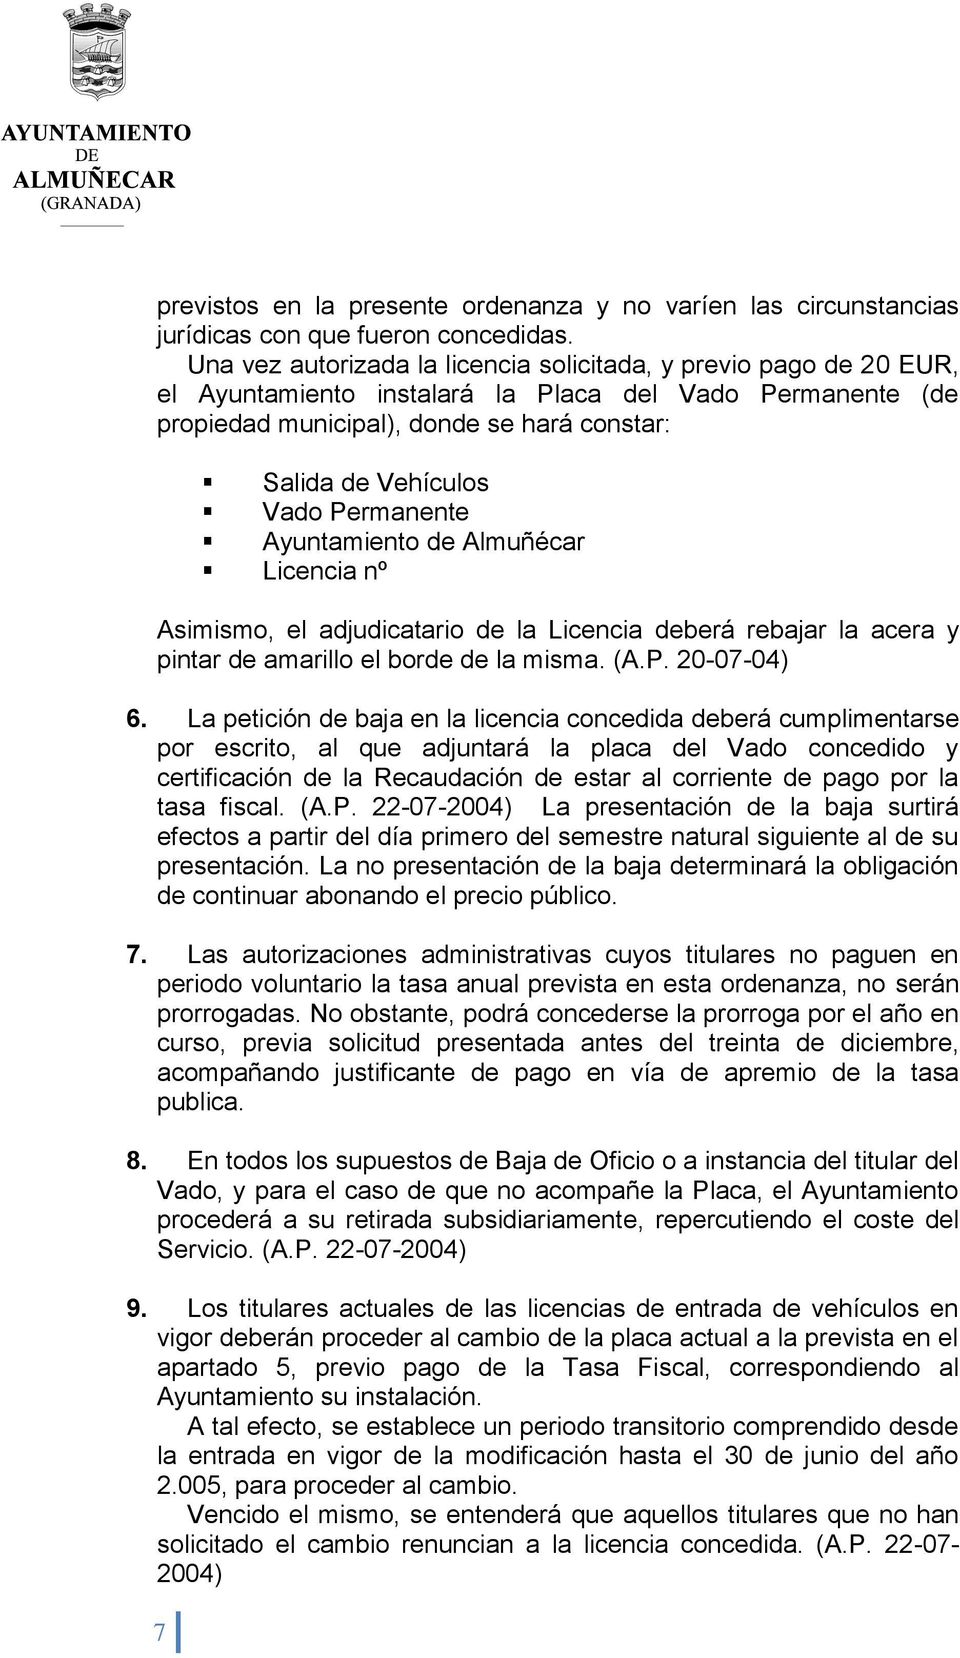 Permanente Ayuntamiento de Almuñécar Licencia nº Asimismo, el adjudicatario de la Licencia deberá rebajar la acera y pintar de amarillo el borde de la misma. (A.P. 20-07-04) 6.